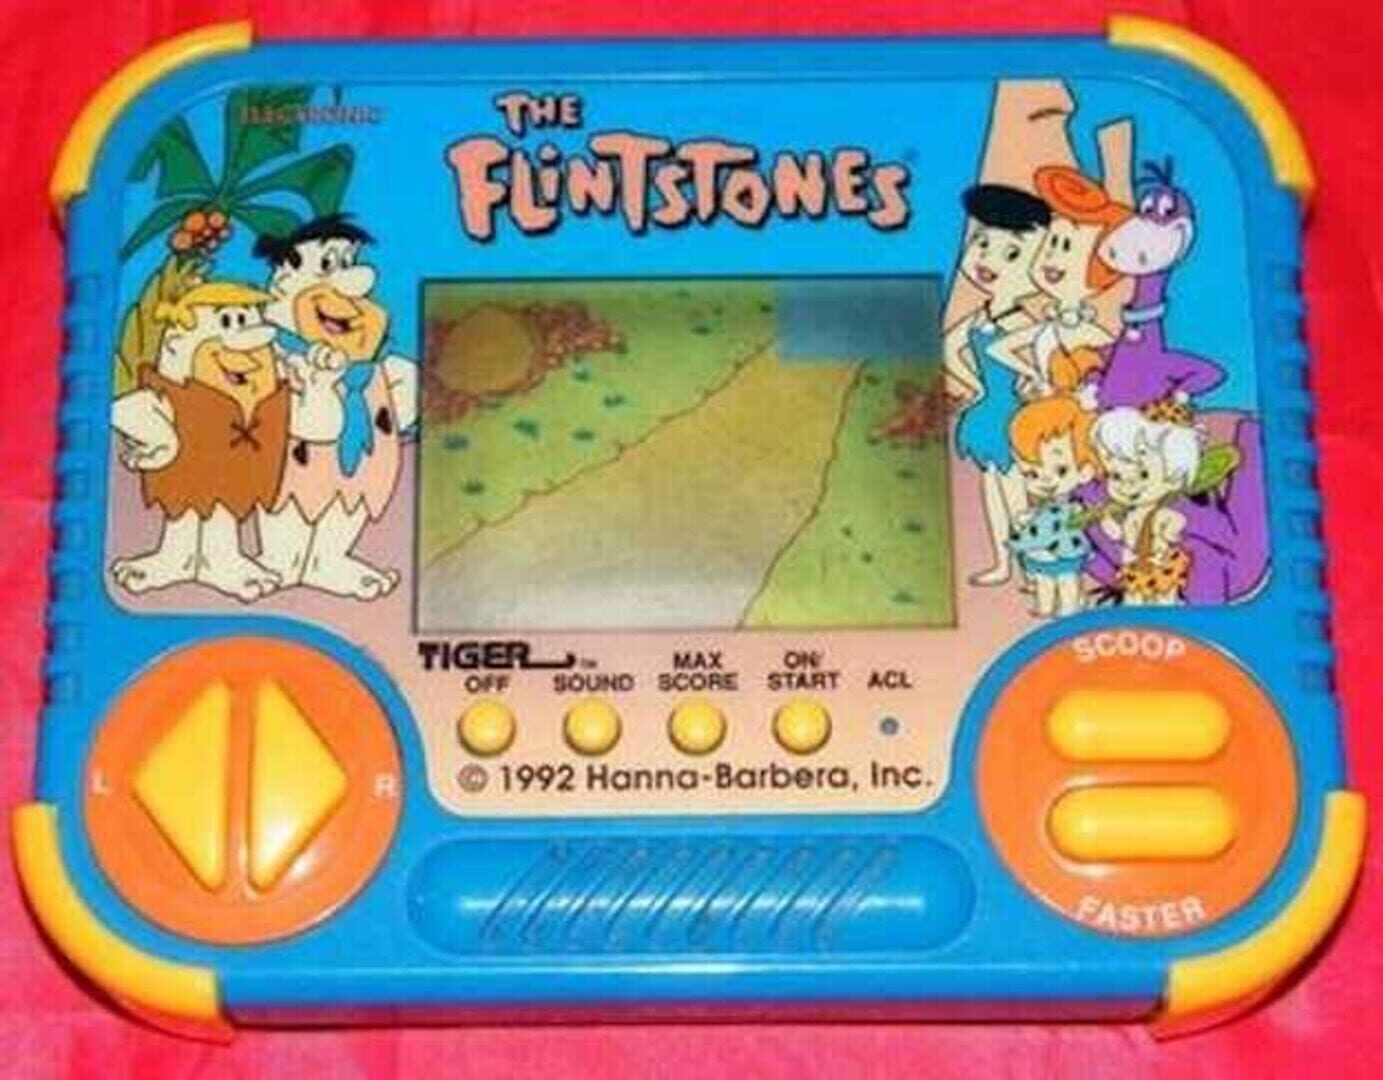 The Flintstones Image